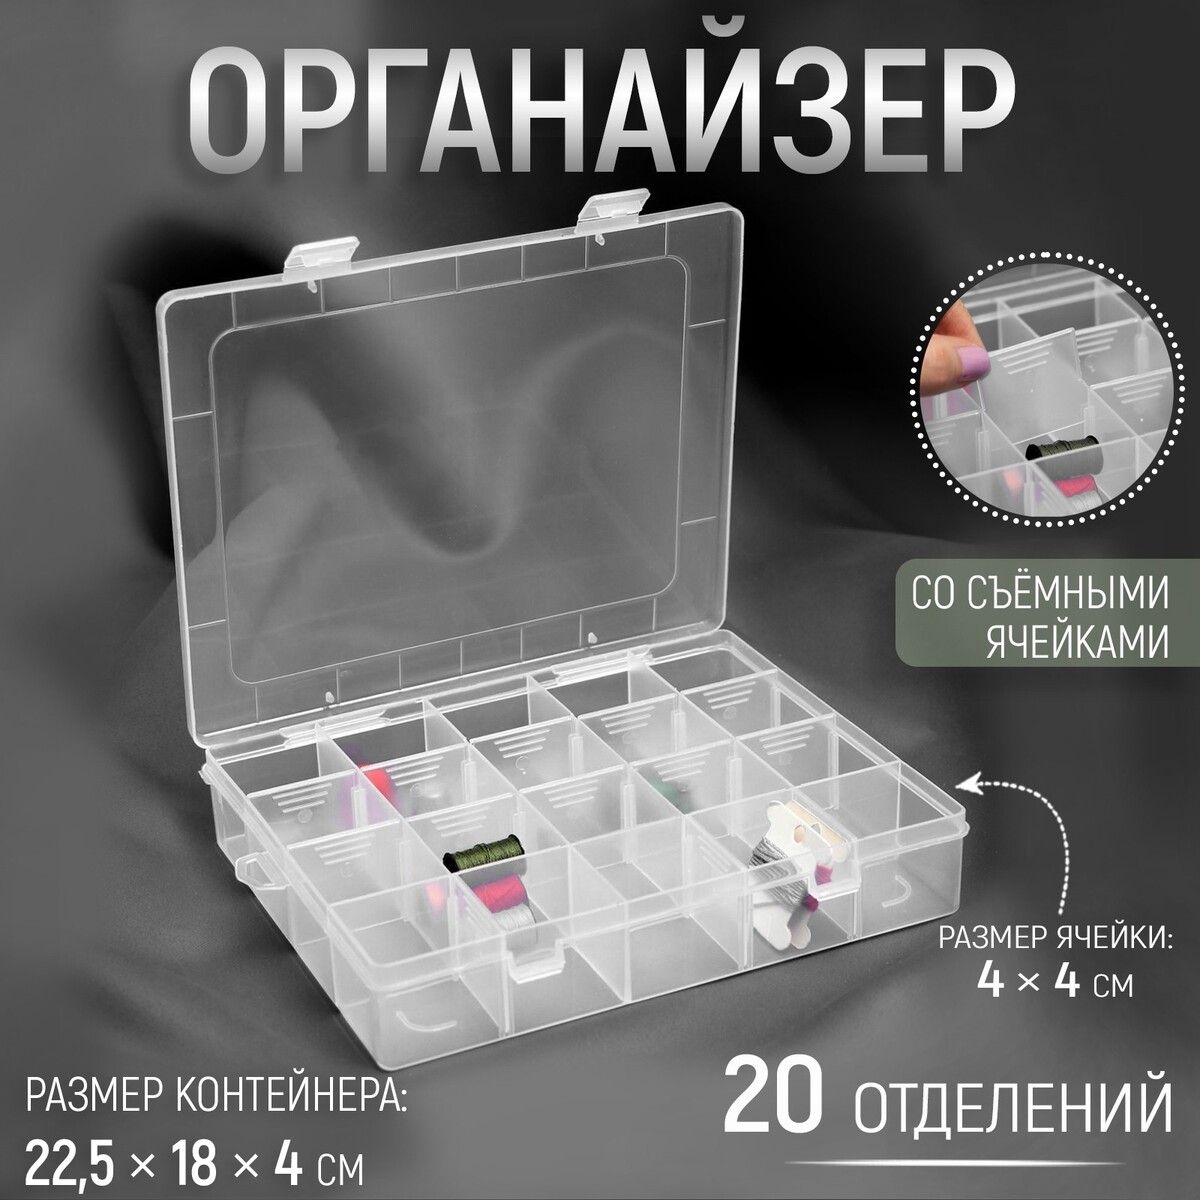 Органайзер для рукоделия, со съемными ячейками, 20 отделений, 22,5 × 18 × 4 см, цвет прозрачный